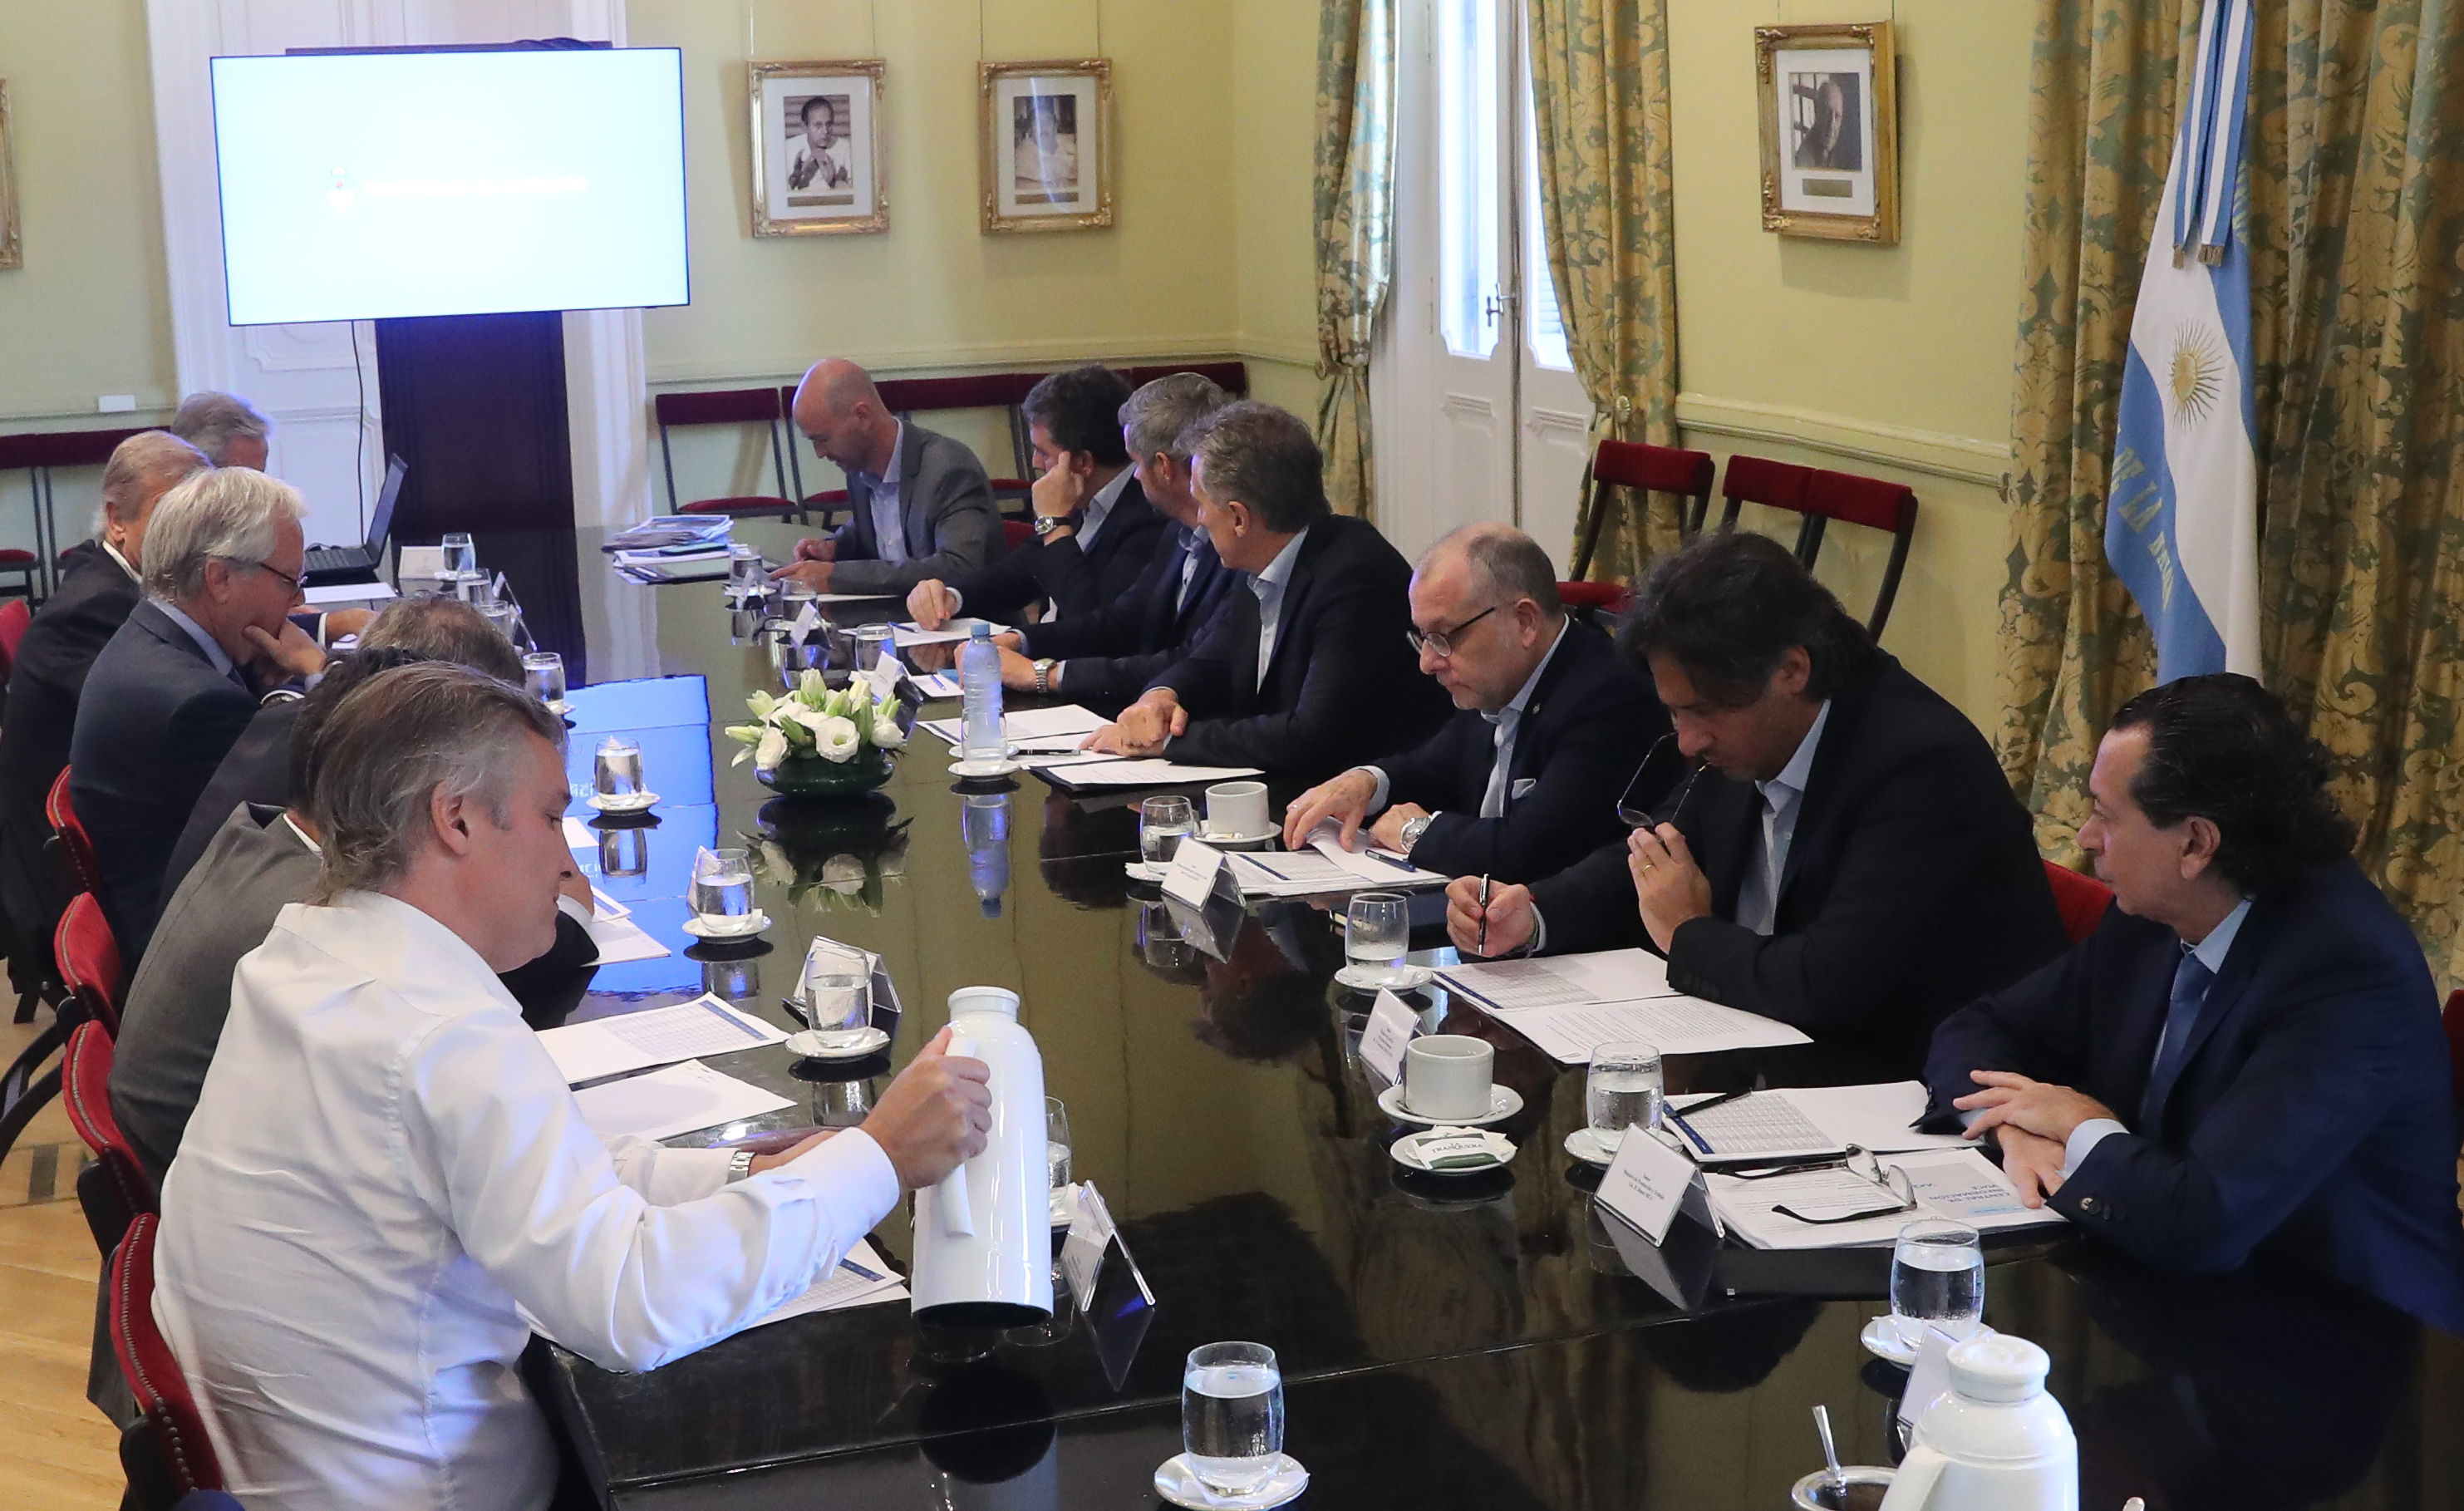 El presidente Macri encabezó una reunión de Gabinete Nacional